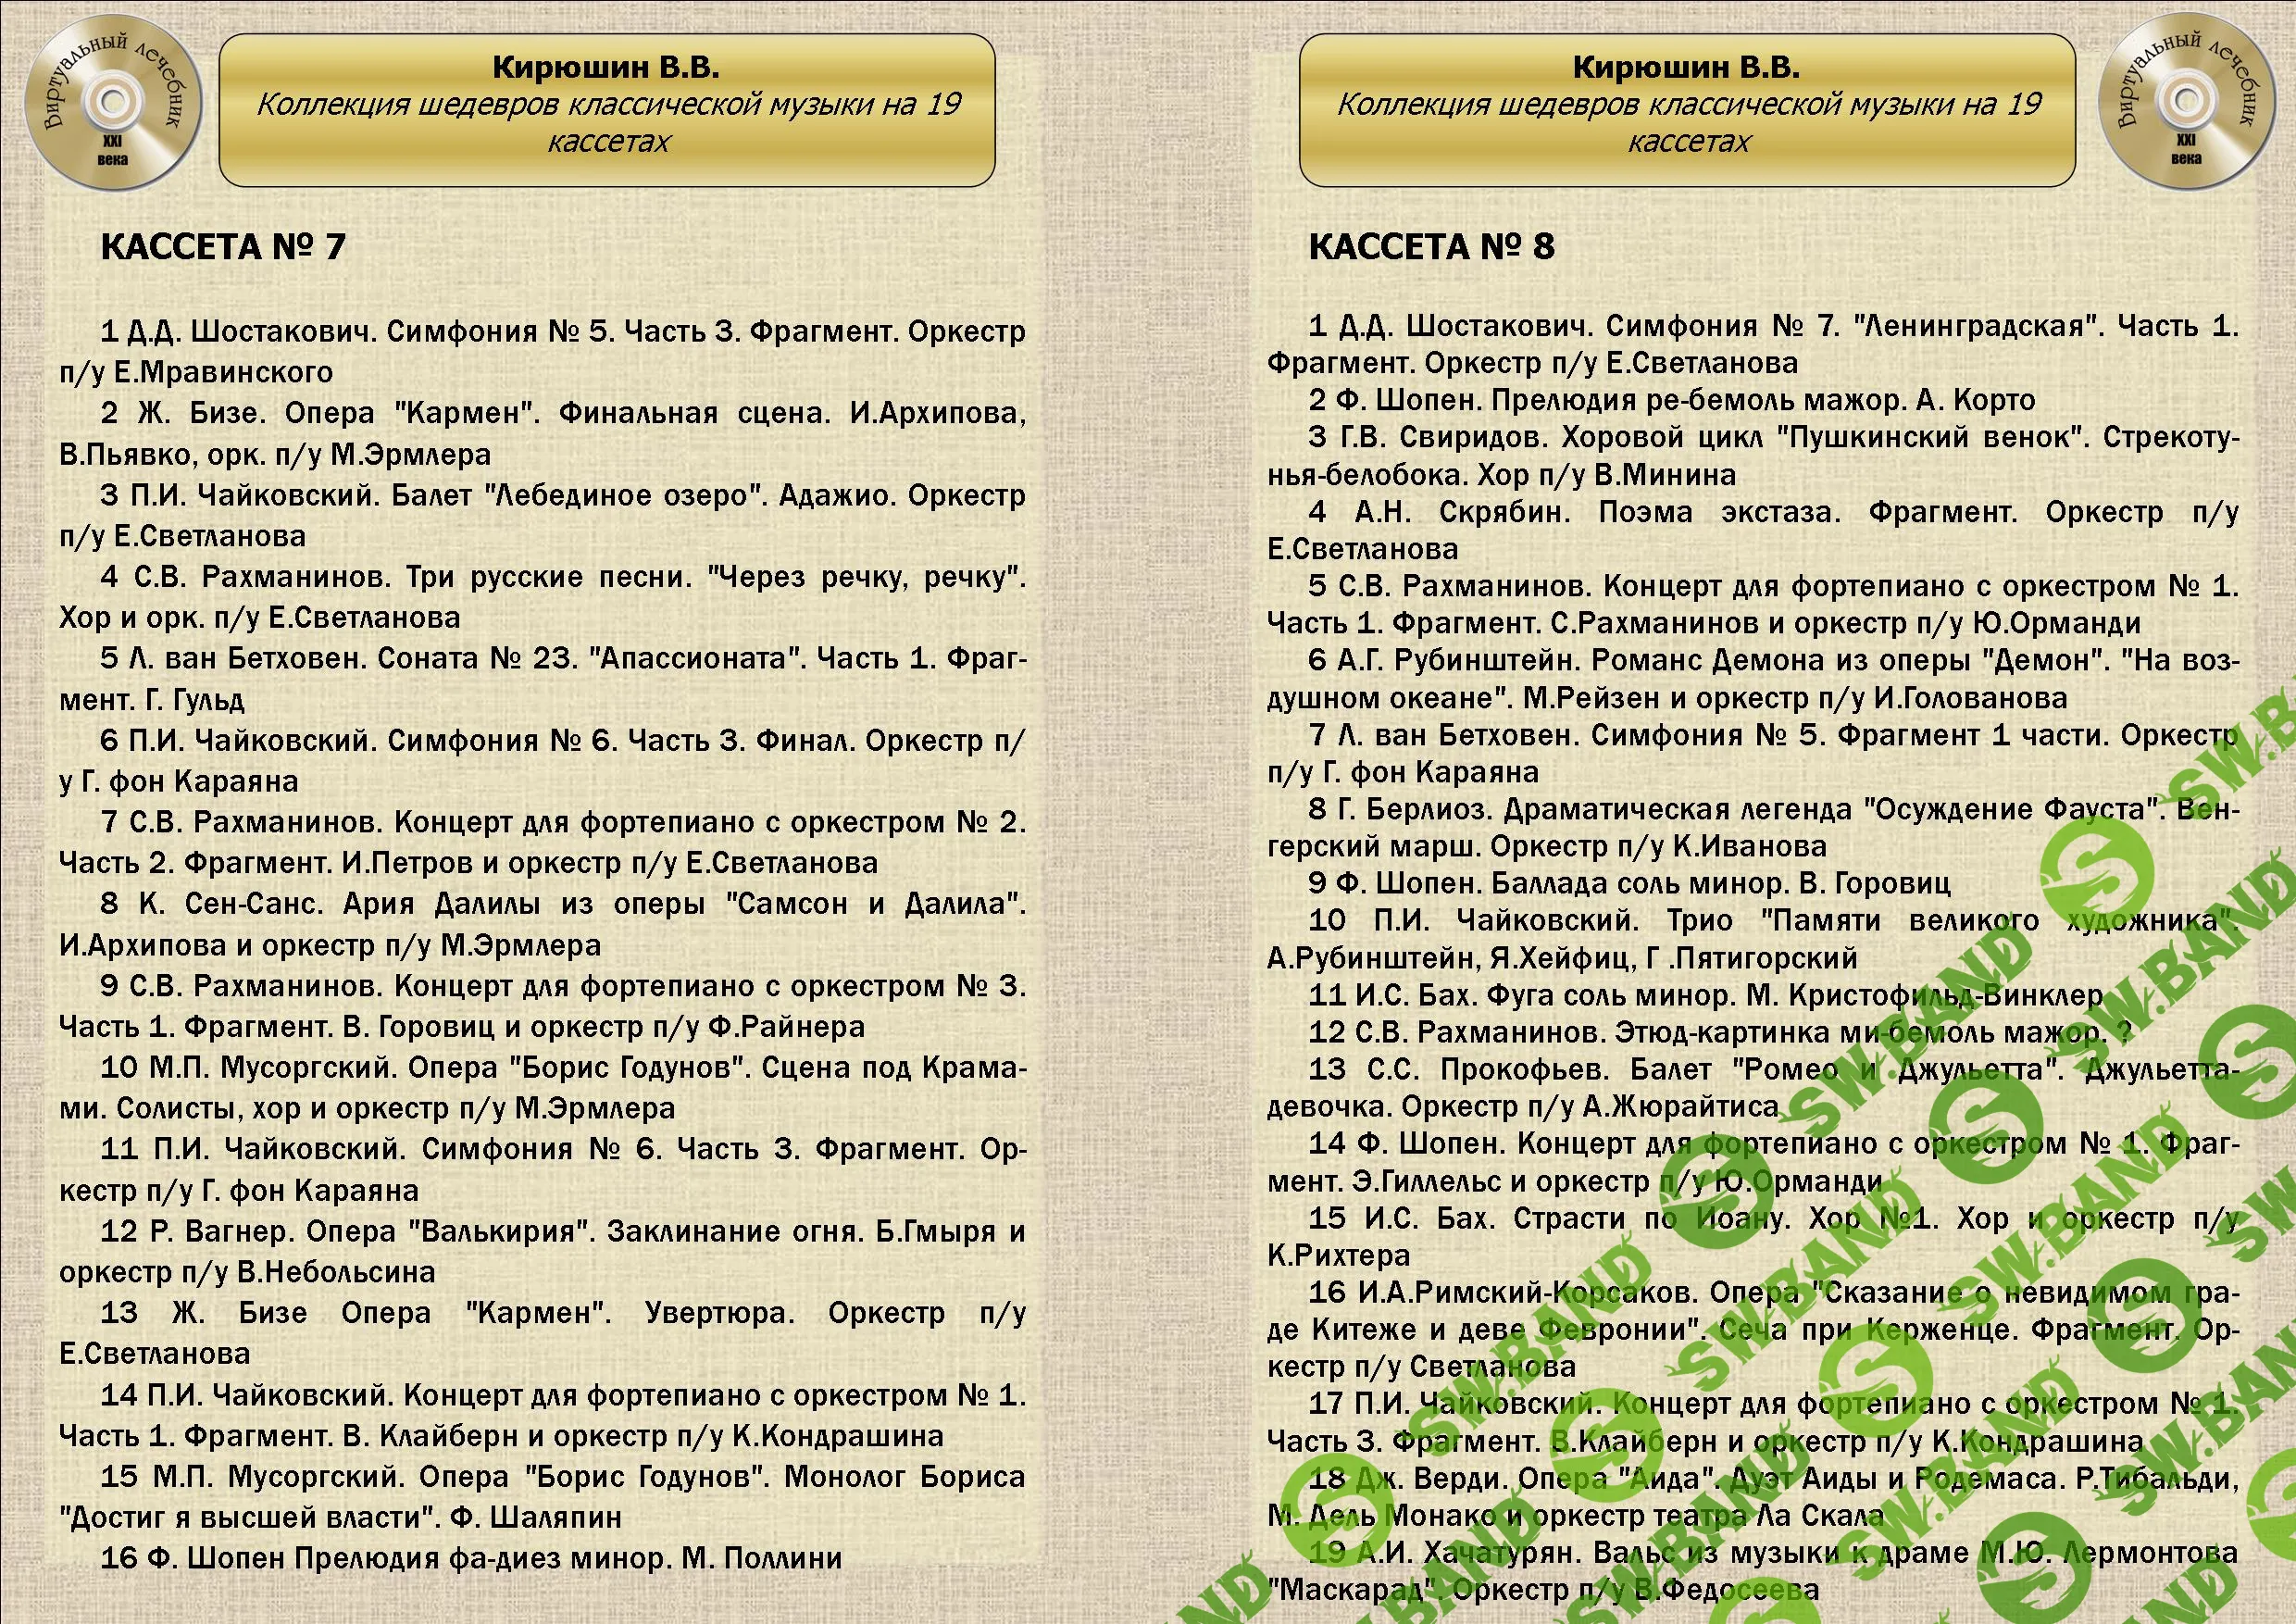 [Виртуальный Лечебник XXI века] Коллекция шедевров классической музыки от В.В.Кирюшина на 19 кассетах